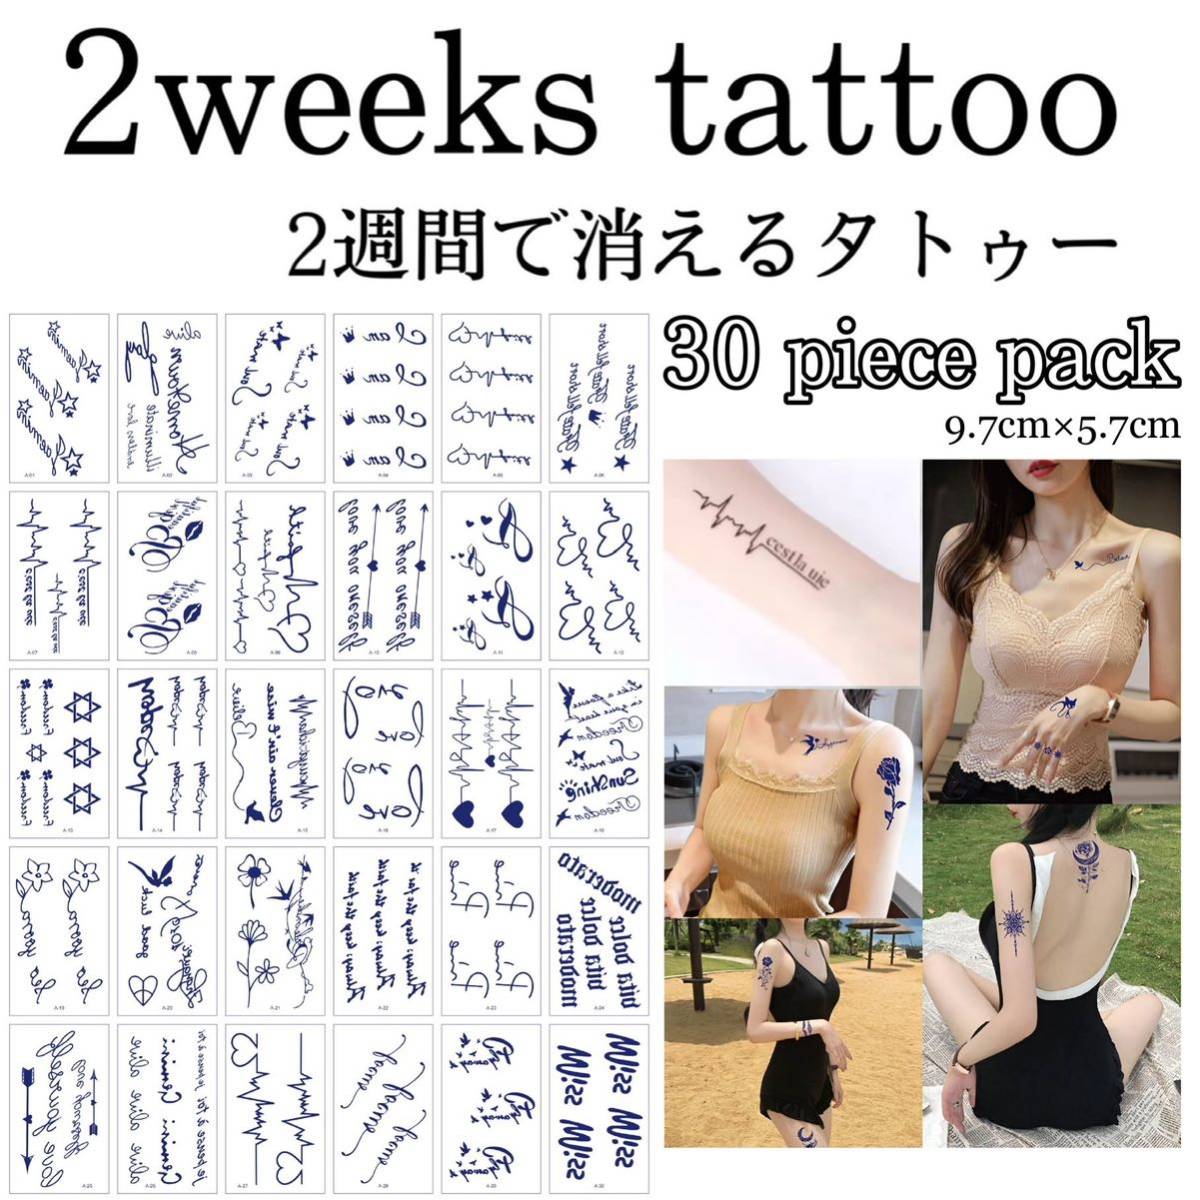 【A】ミニジャグアタトゥー30枚セット 2週間で消えるタトゥー イベント タトゥーシール_画像1